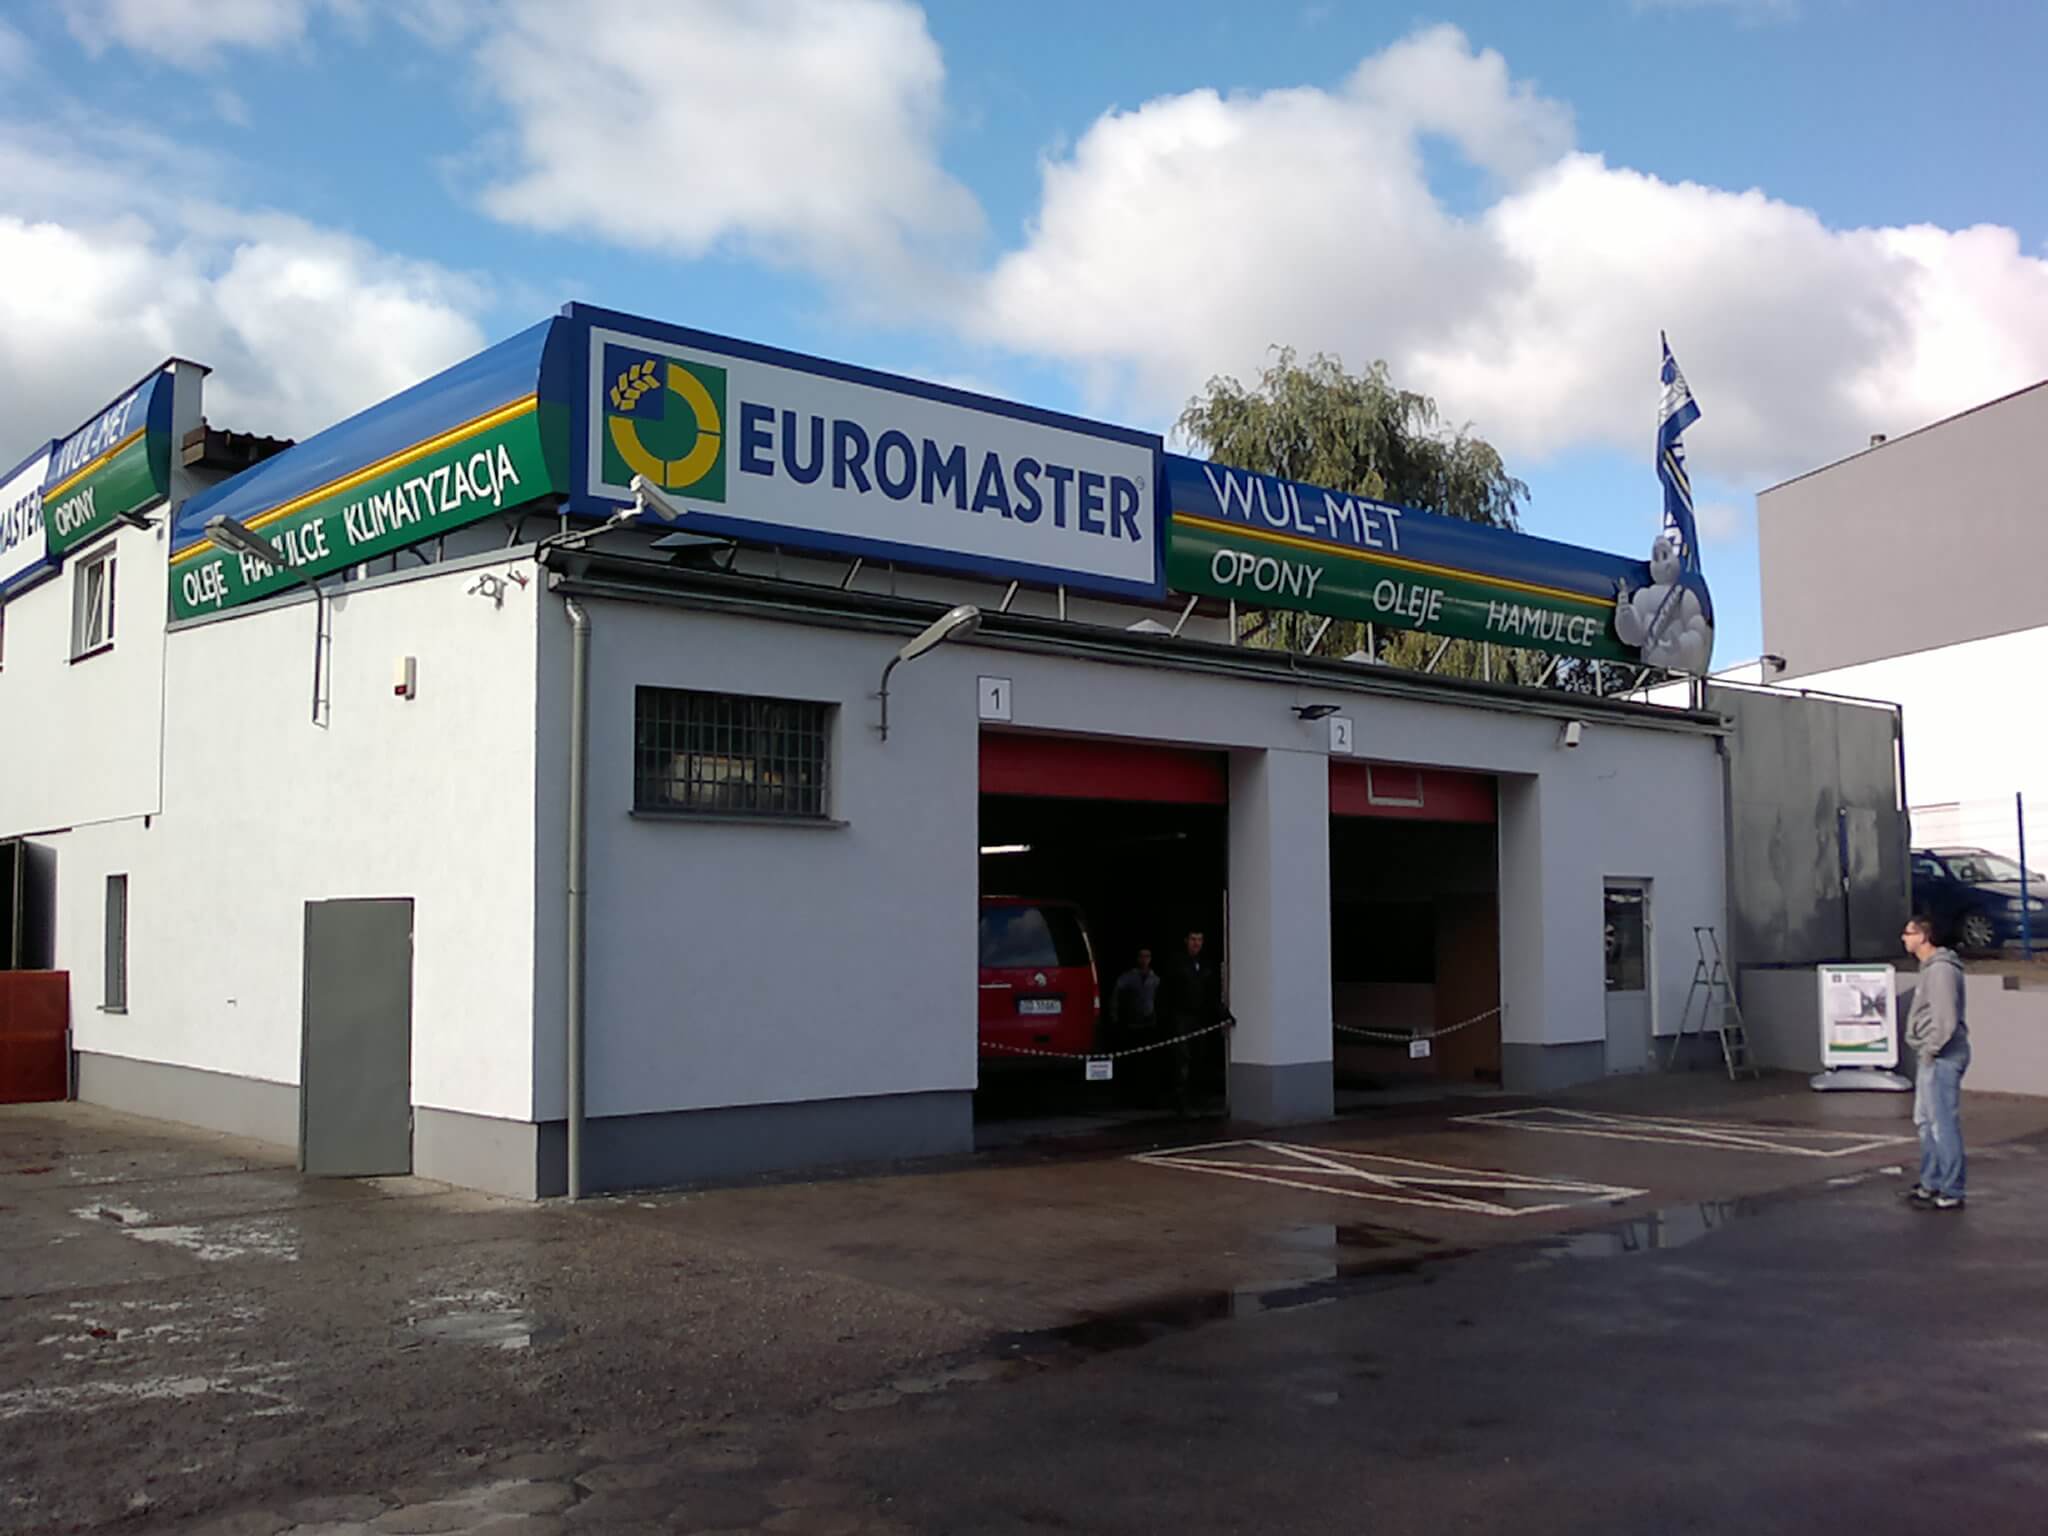 Images Euromaster WUL-MET